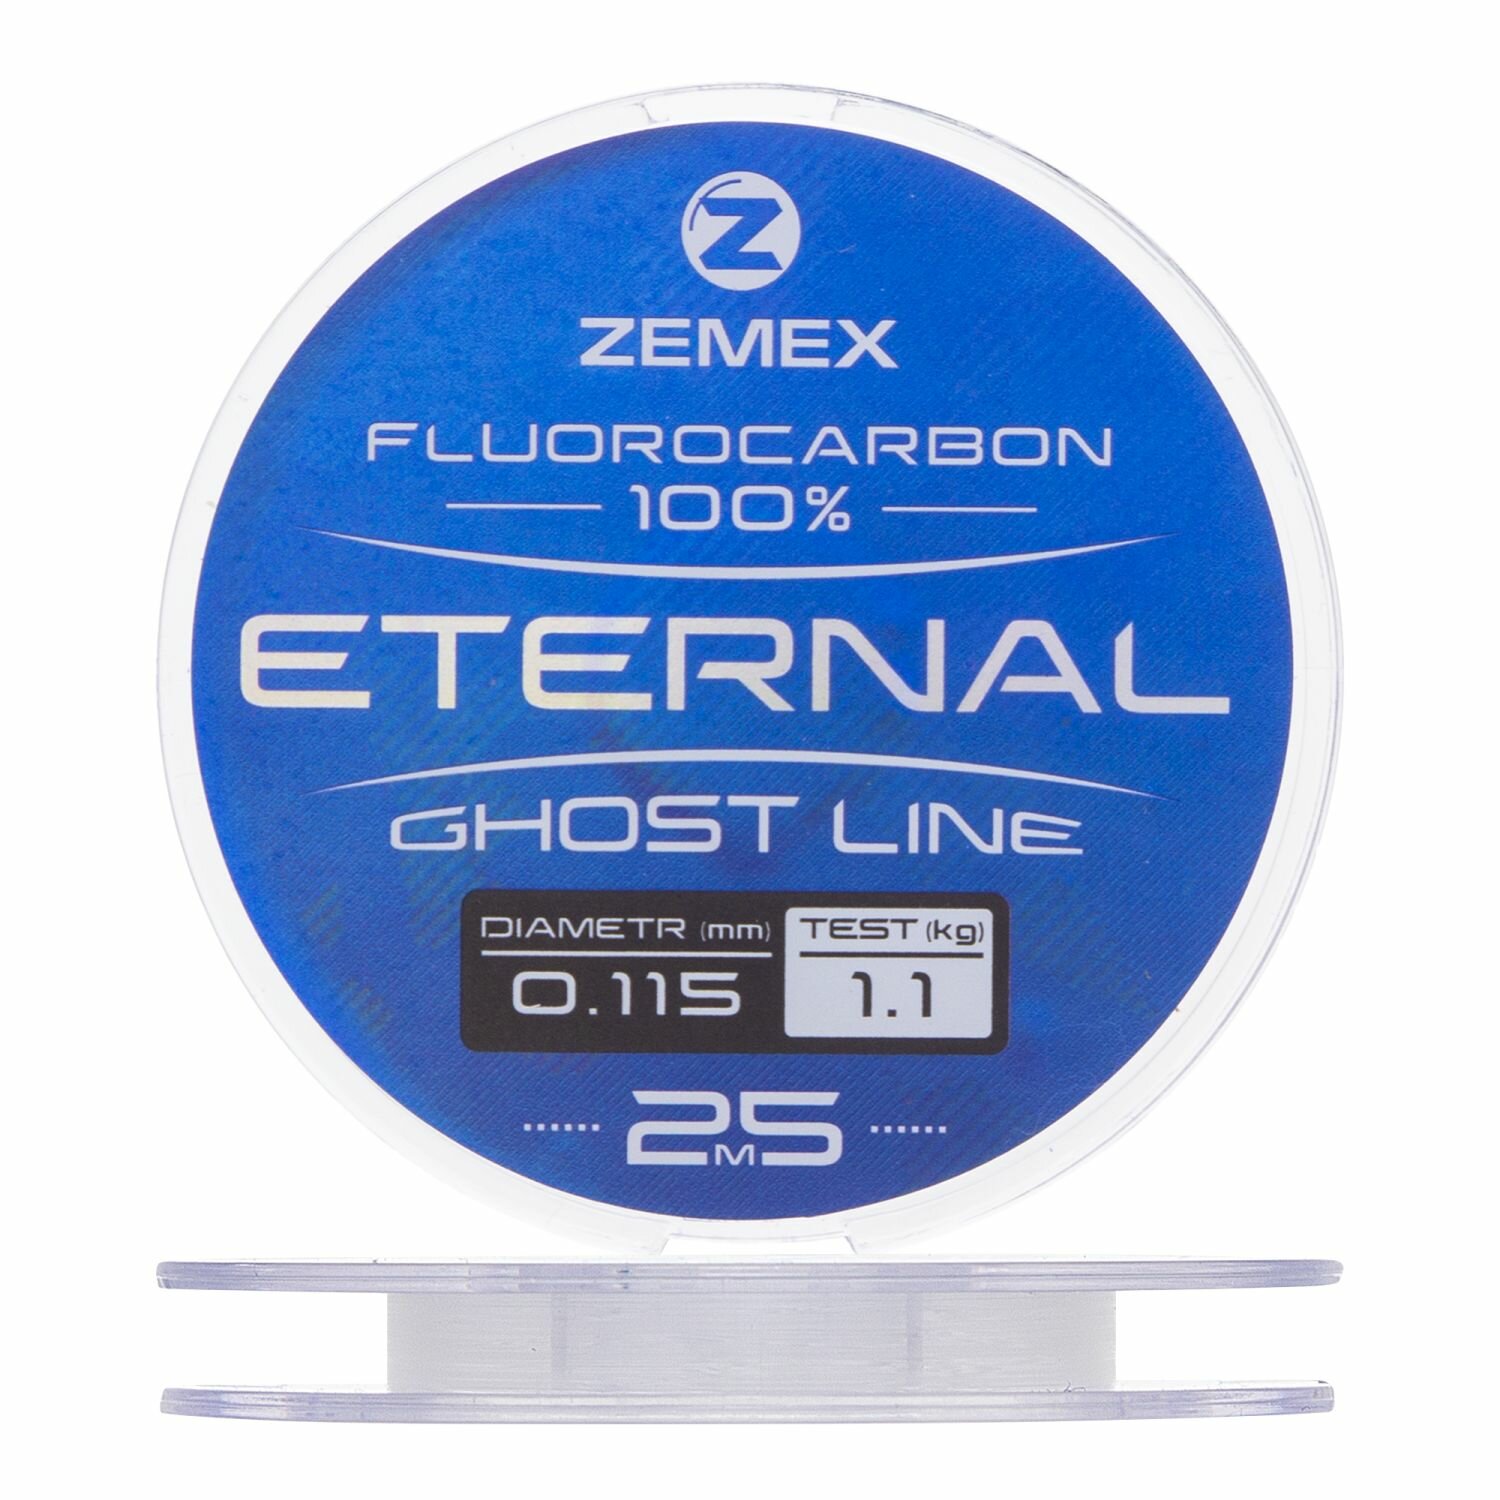 Флюорокарбон Zemex Eternal 100% Fluorocarbon 0115мм 25м (clear)